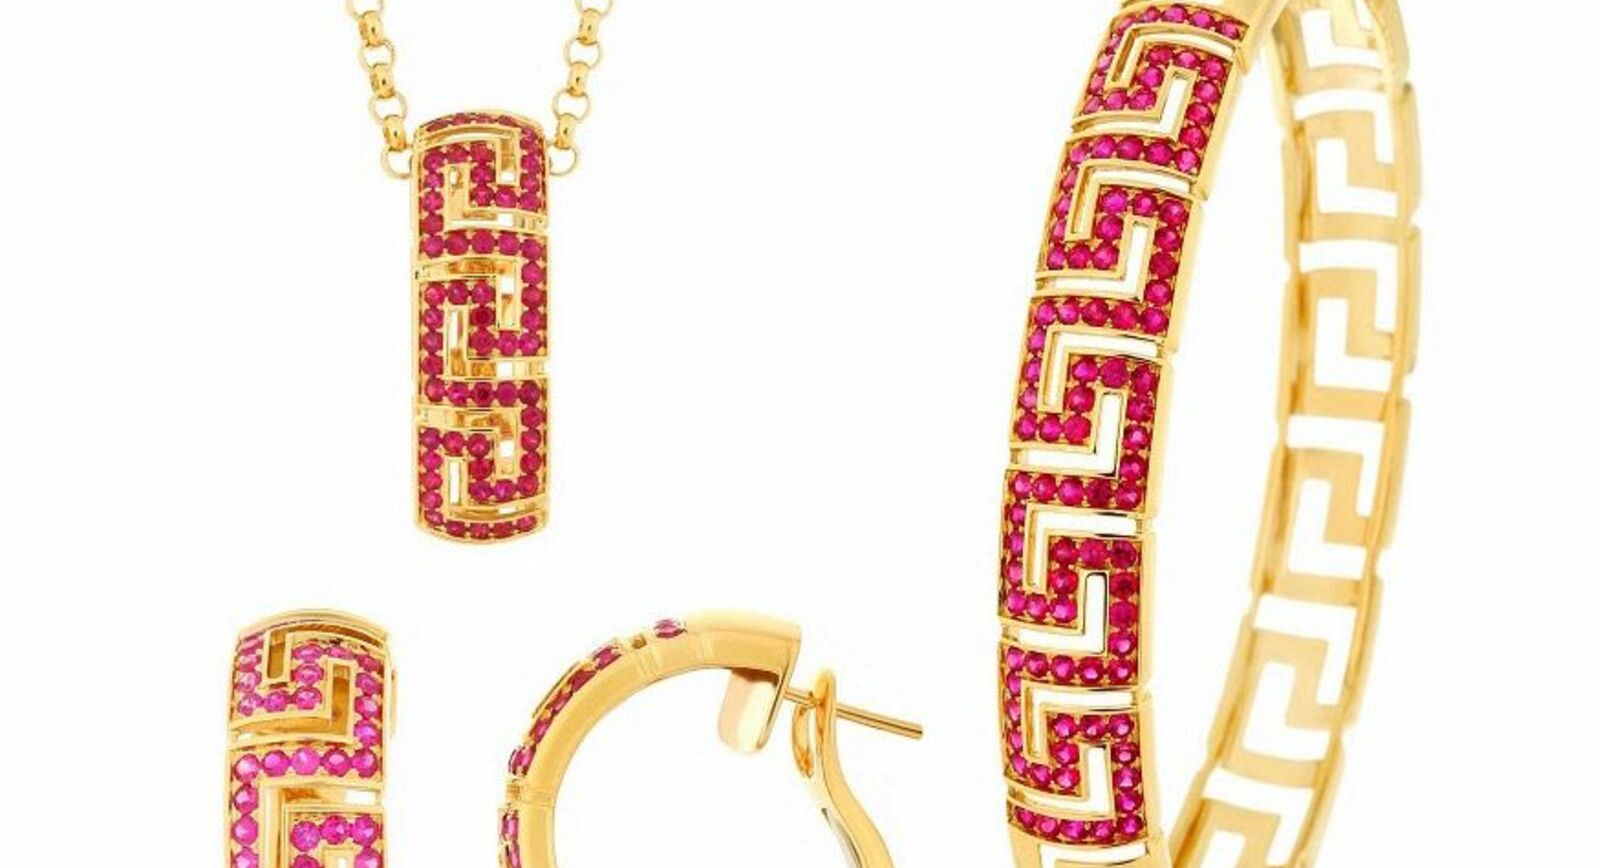 Versace представил новые украшения Greca ко дню Святого Валентина